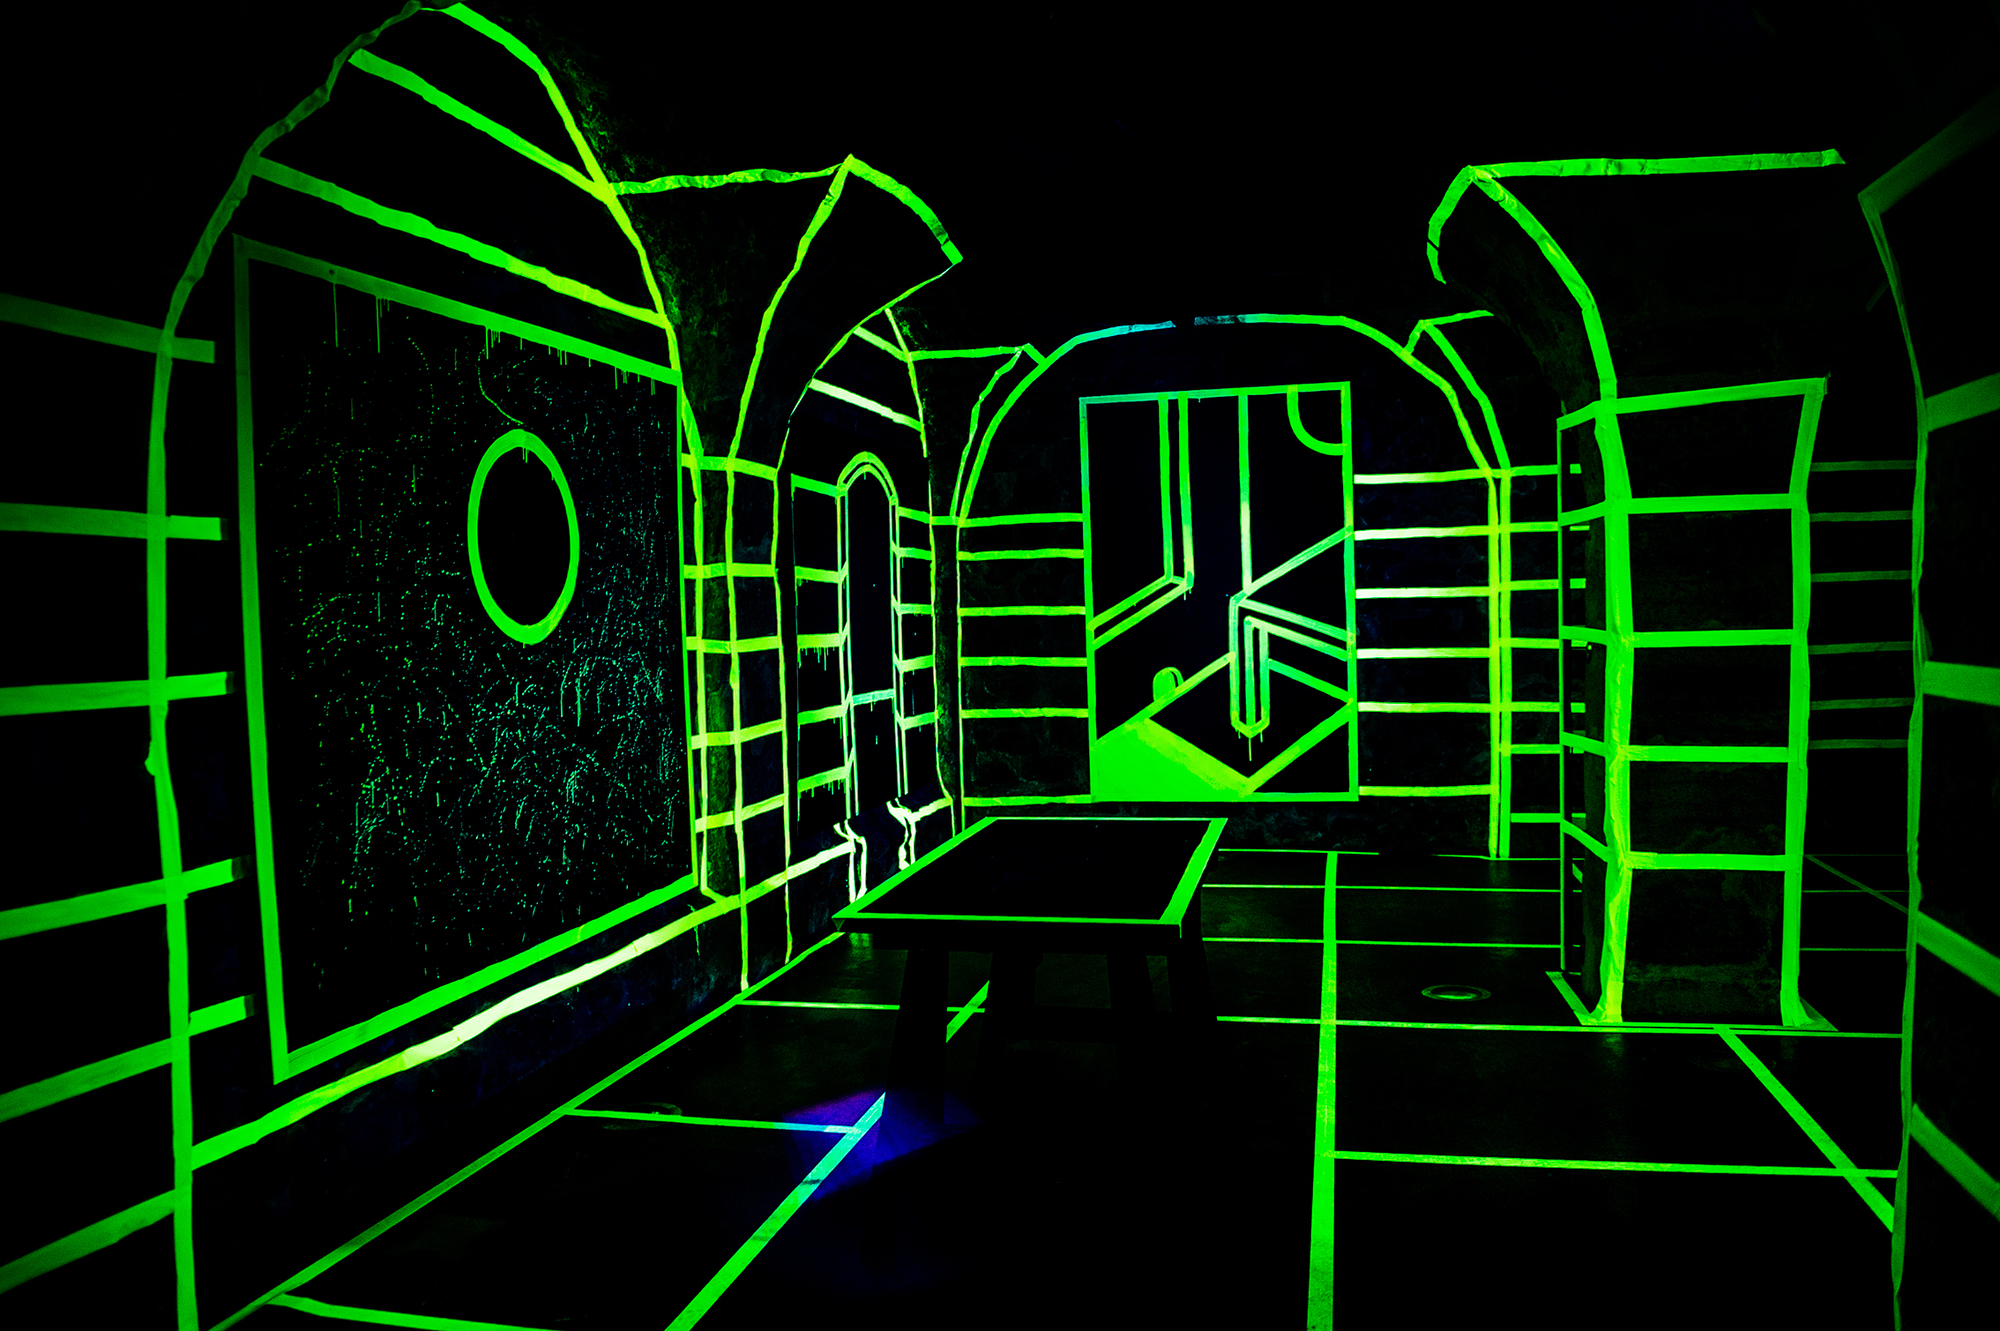 Joshua Vides glow in the dark exhibit 2